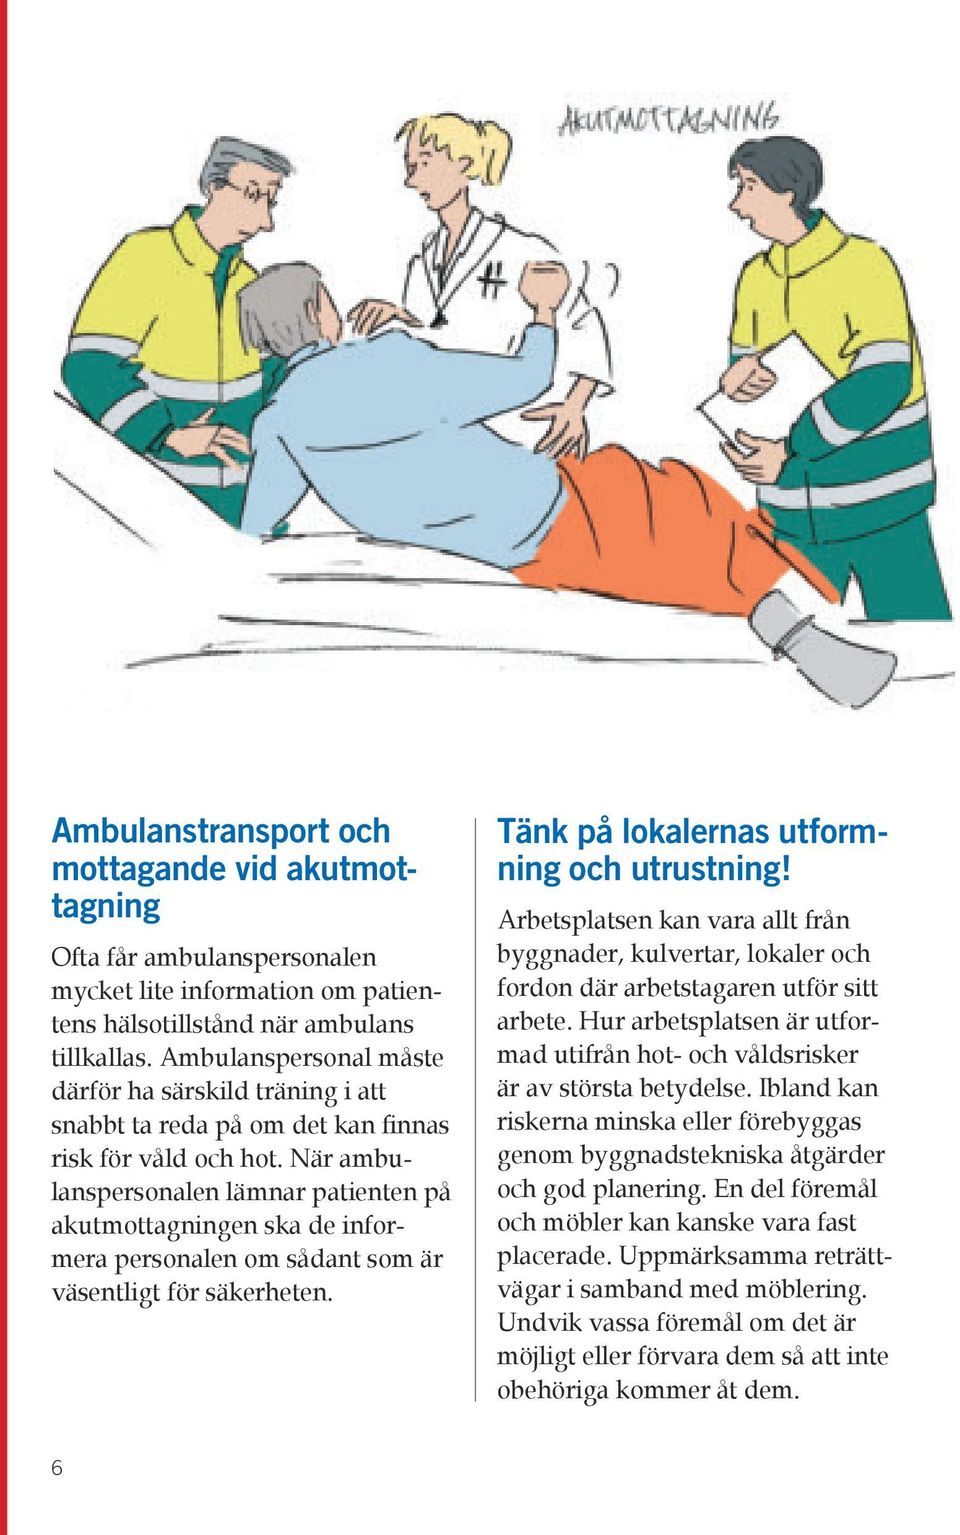 När ambulanspersonalen lämnar patienten på akutmottagningen ska de informera personalen om sådant som är väsentligt för säkerheten. Tänk på lokalernas utformning och utrustning!